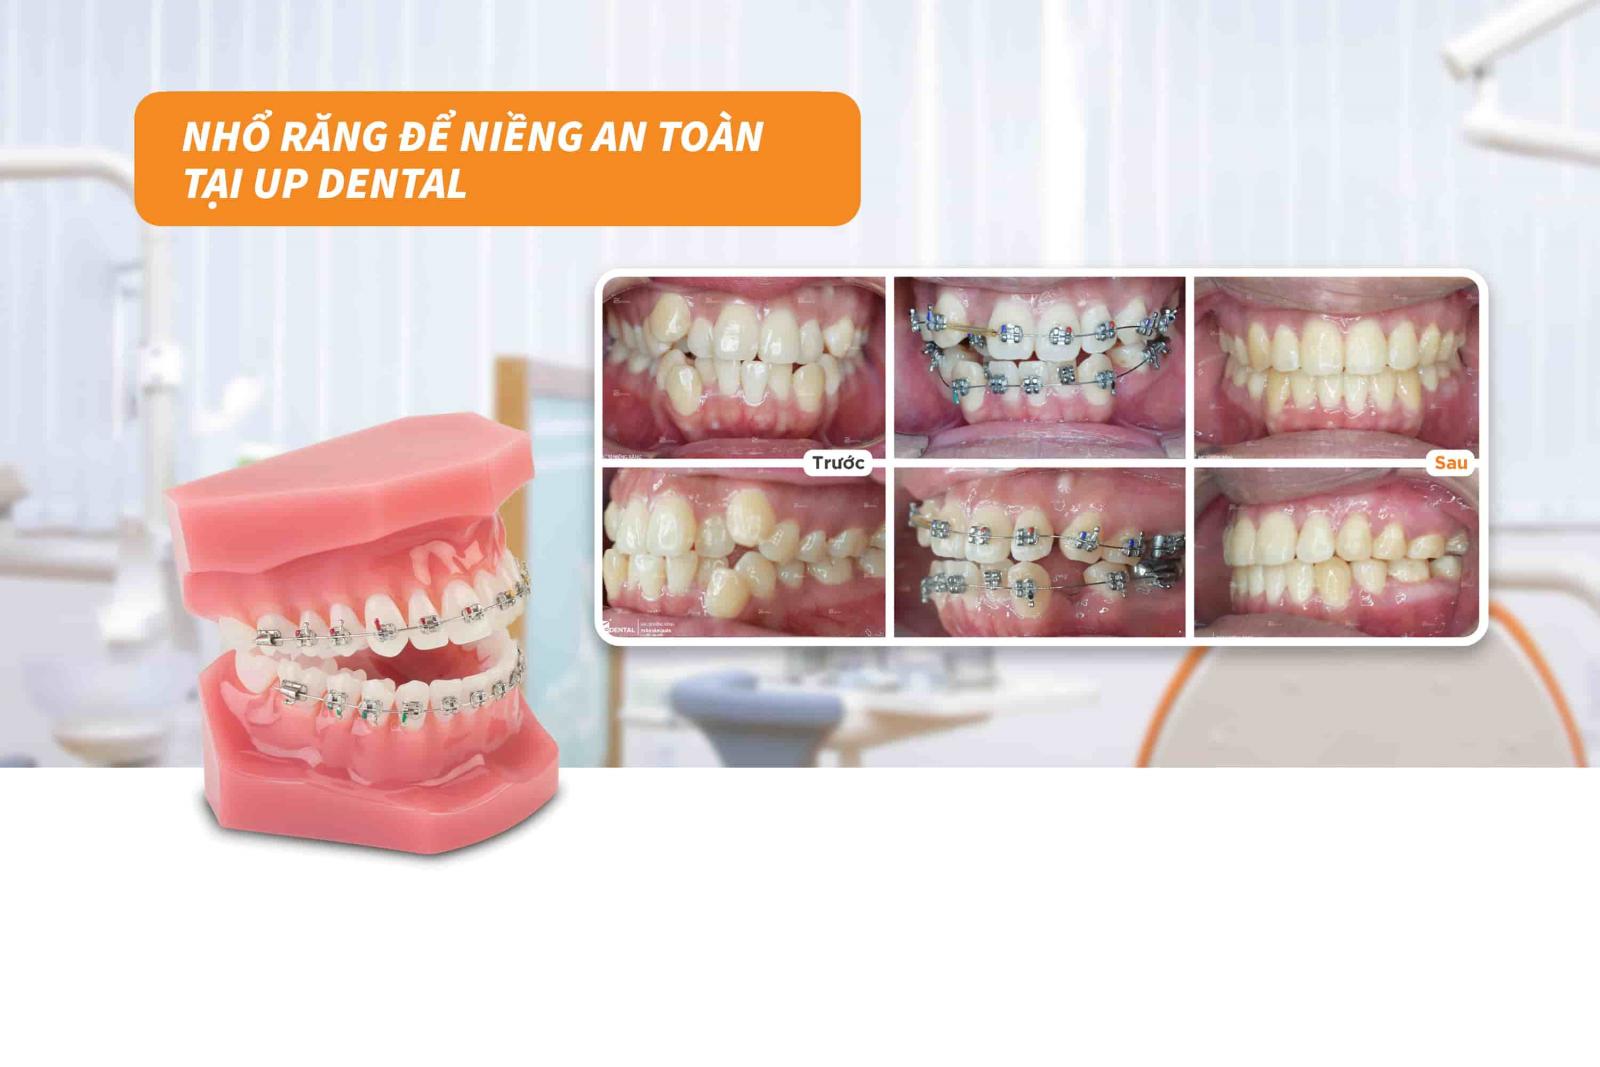 Nhổ răng để niềng an toàn tại Up Dental 